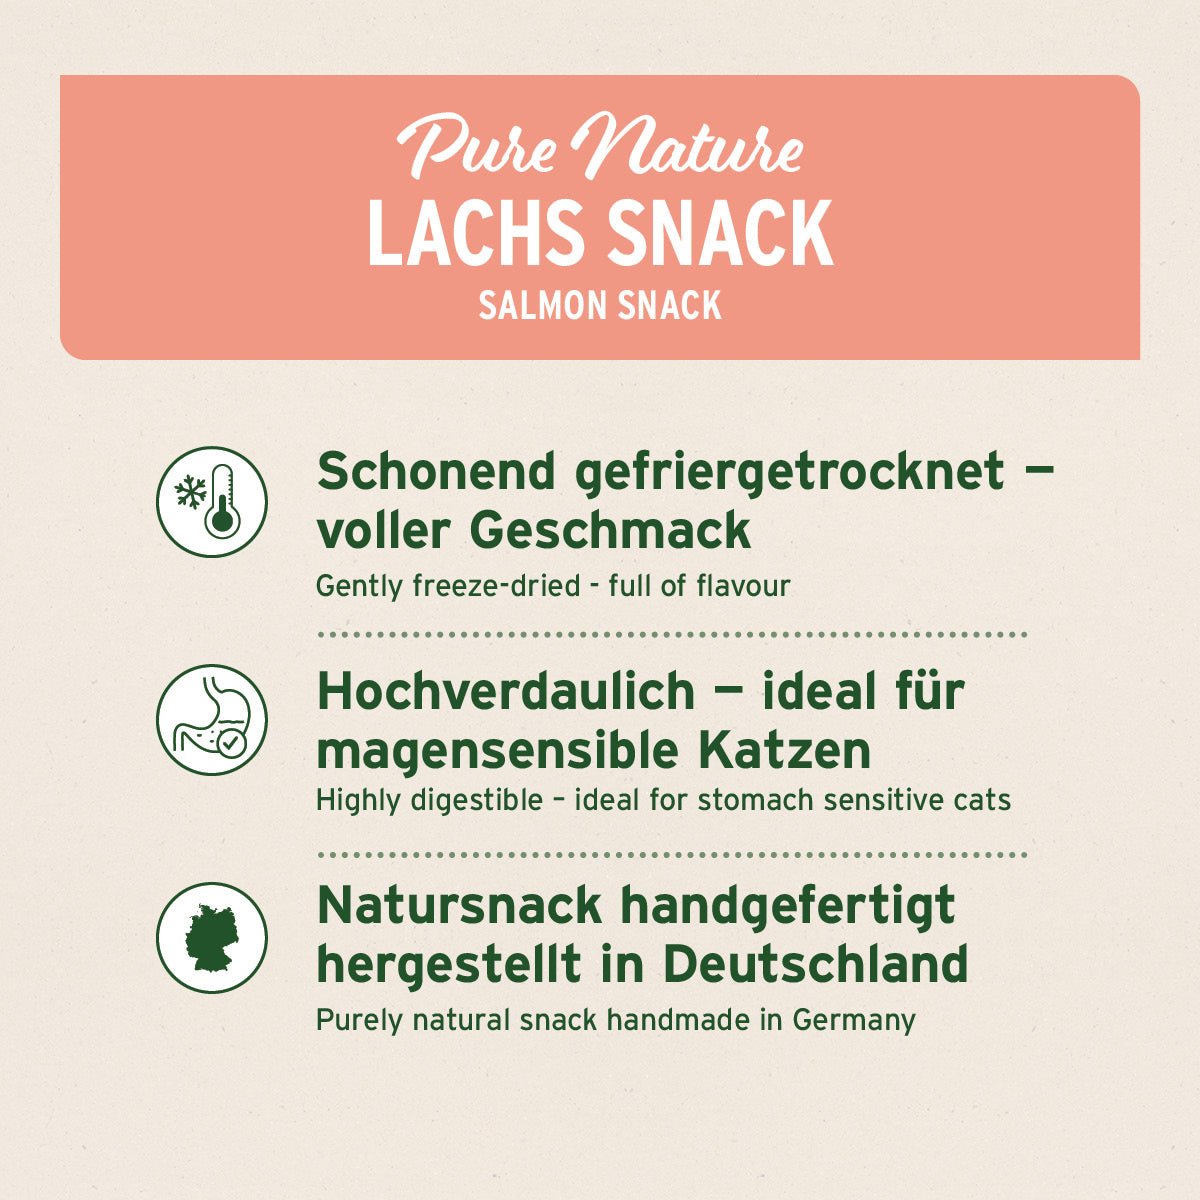 Lachs Snack - AniForte